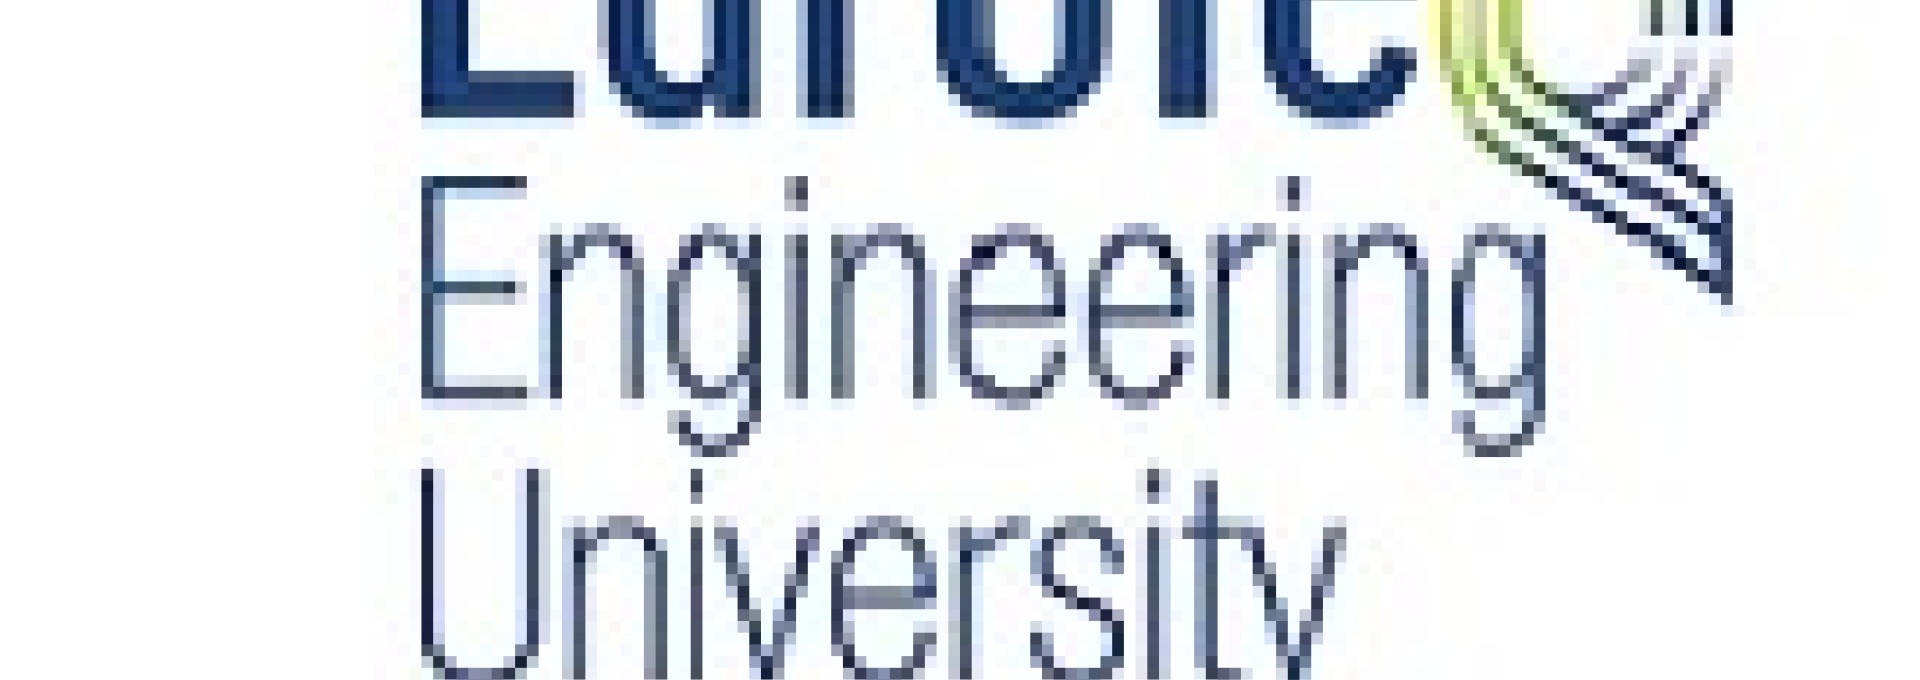 EuroTeQ Engineering University : Créer la formation d’ingénieur de demain